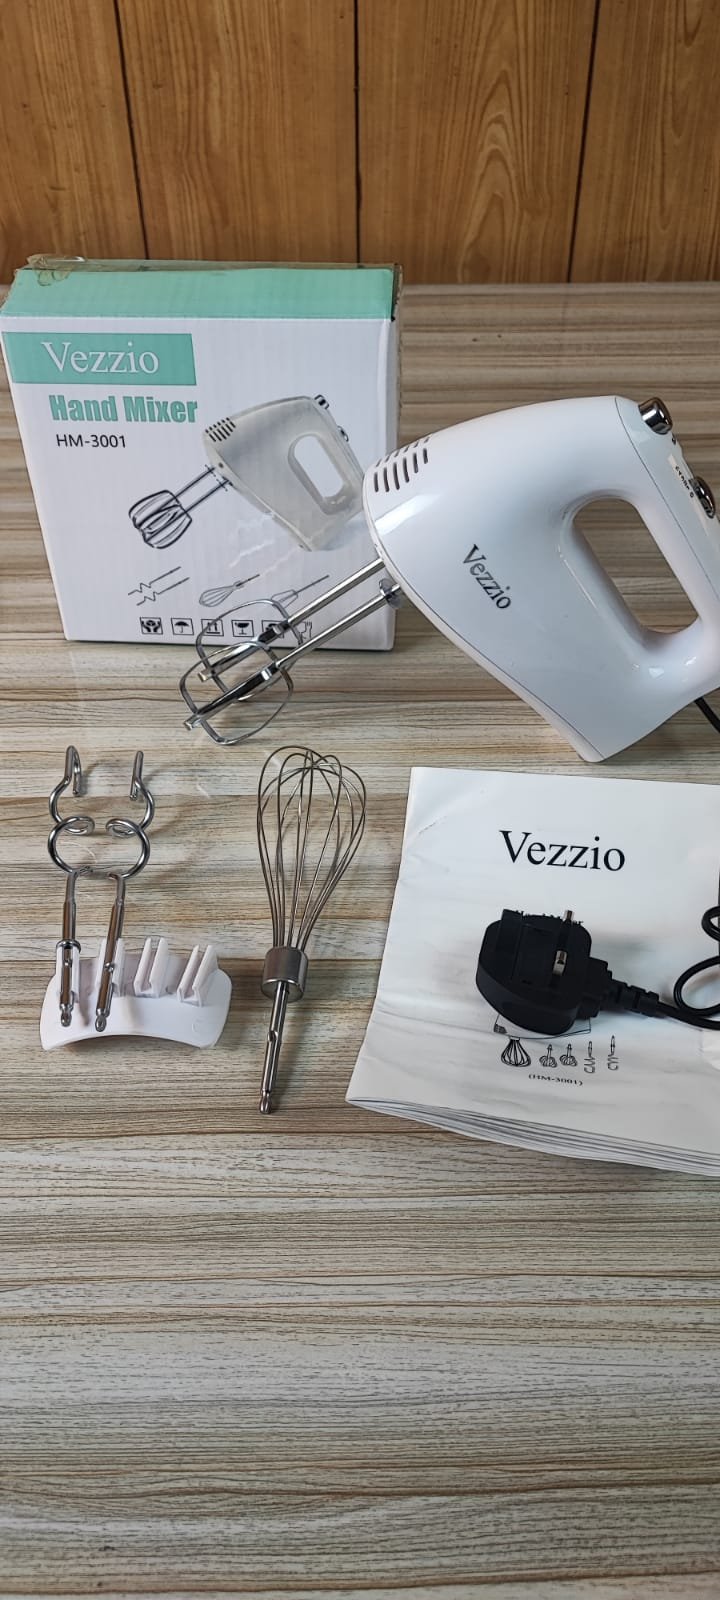 Hand Mixer Electric, Vezzio 5-Speed Kitchen Handheld Mixer with